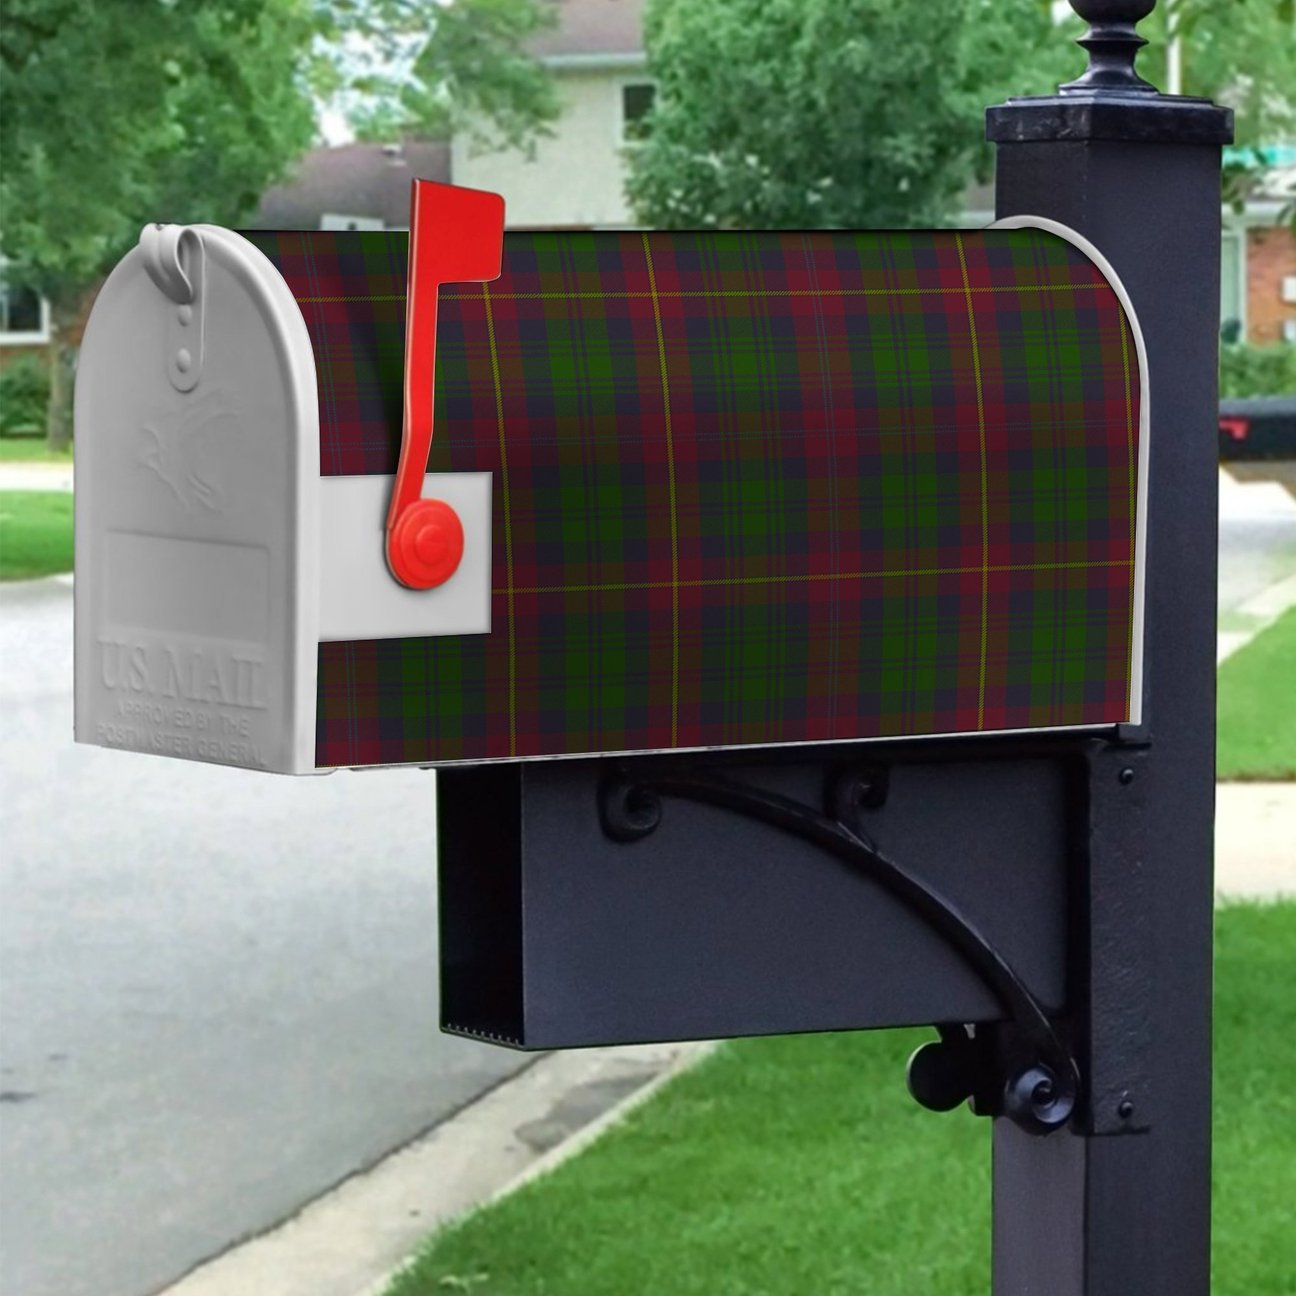 Cairns Tartan Crest Mailbox